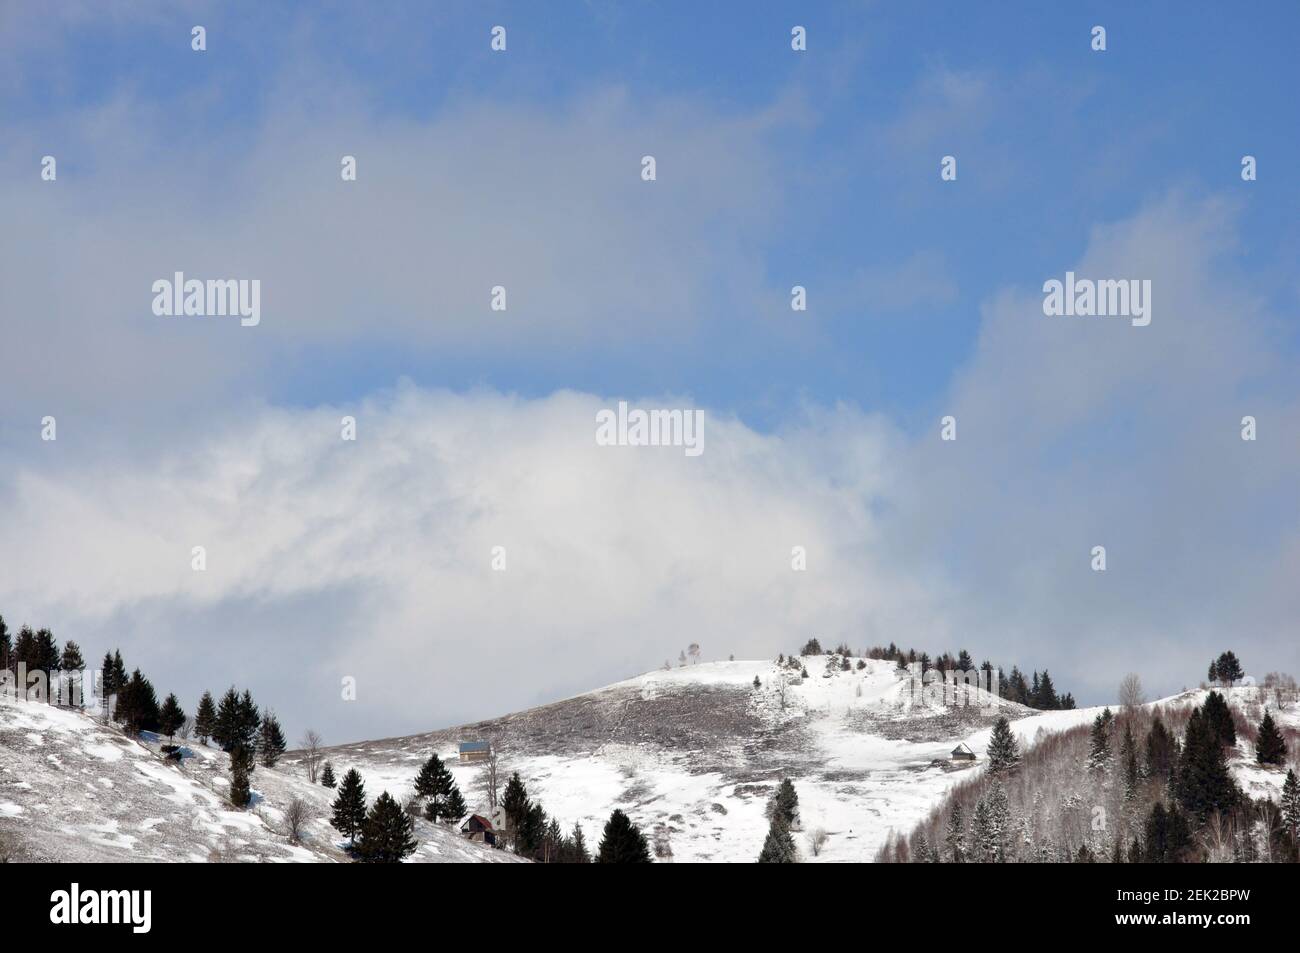 Paisaje escénico de colinas con pequeñas casas y árboles, cubierto de nieve y azul cielo nublado fondo Foto de stock